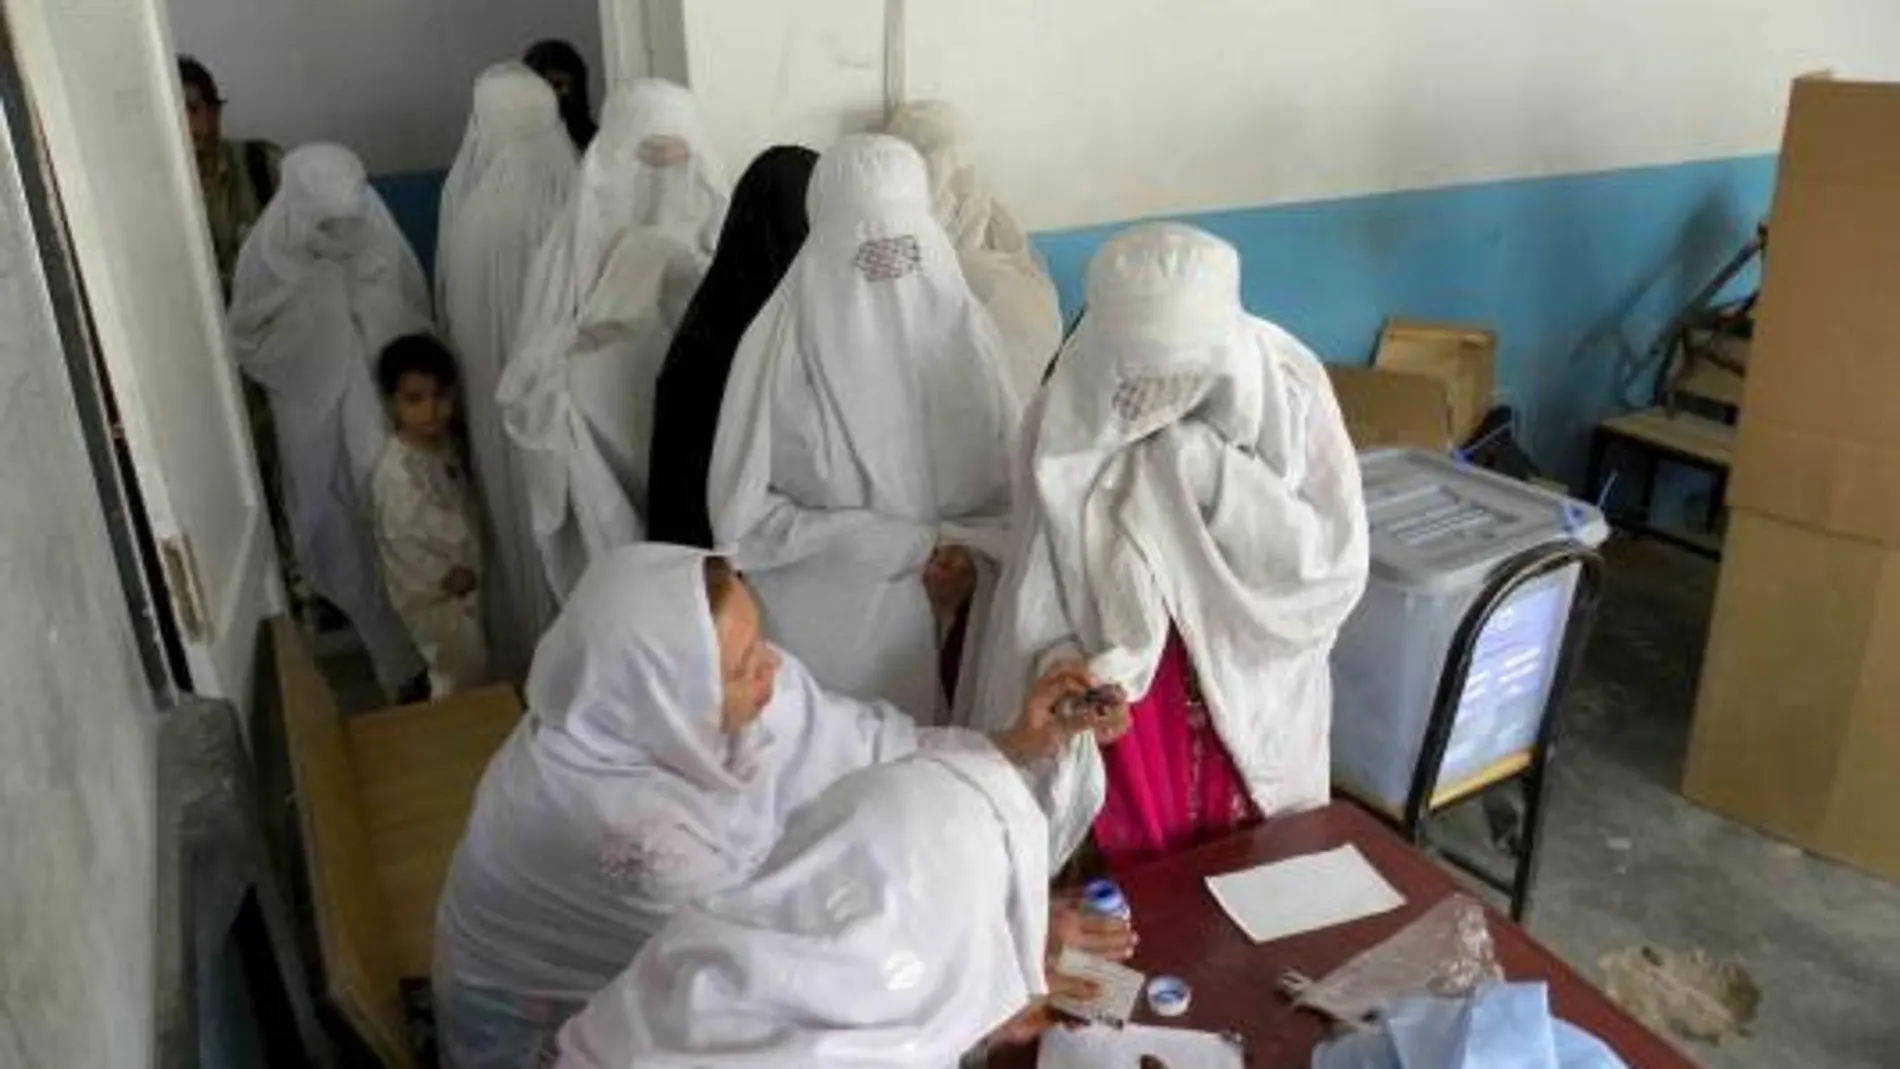 Mujeres afganas votan durante la jornada de elecciones parlamentarias, en Kandahar